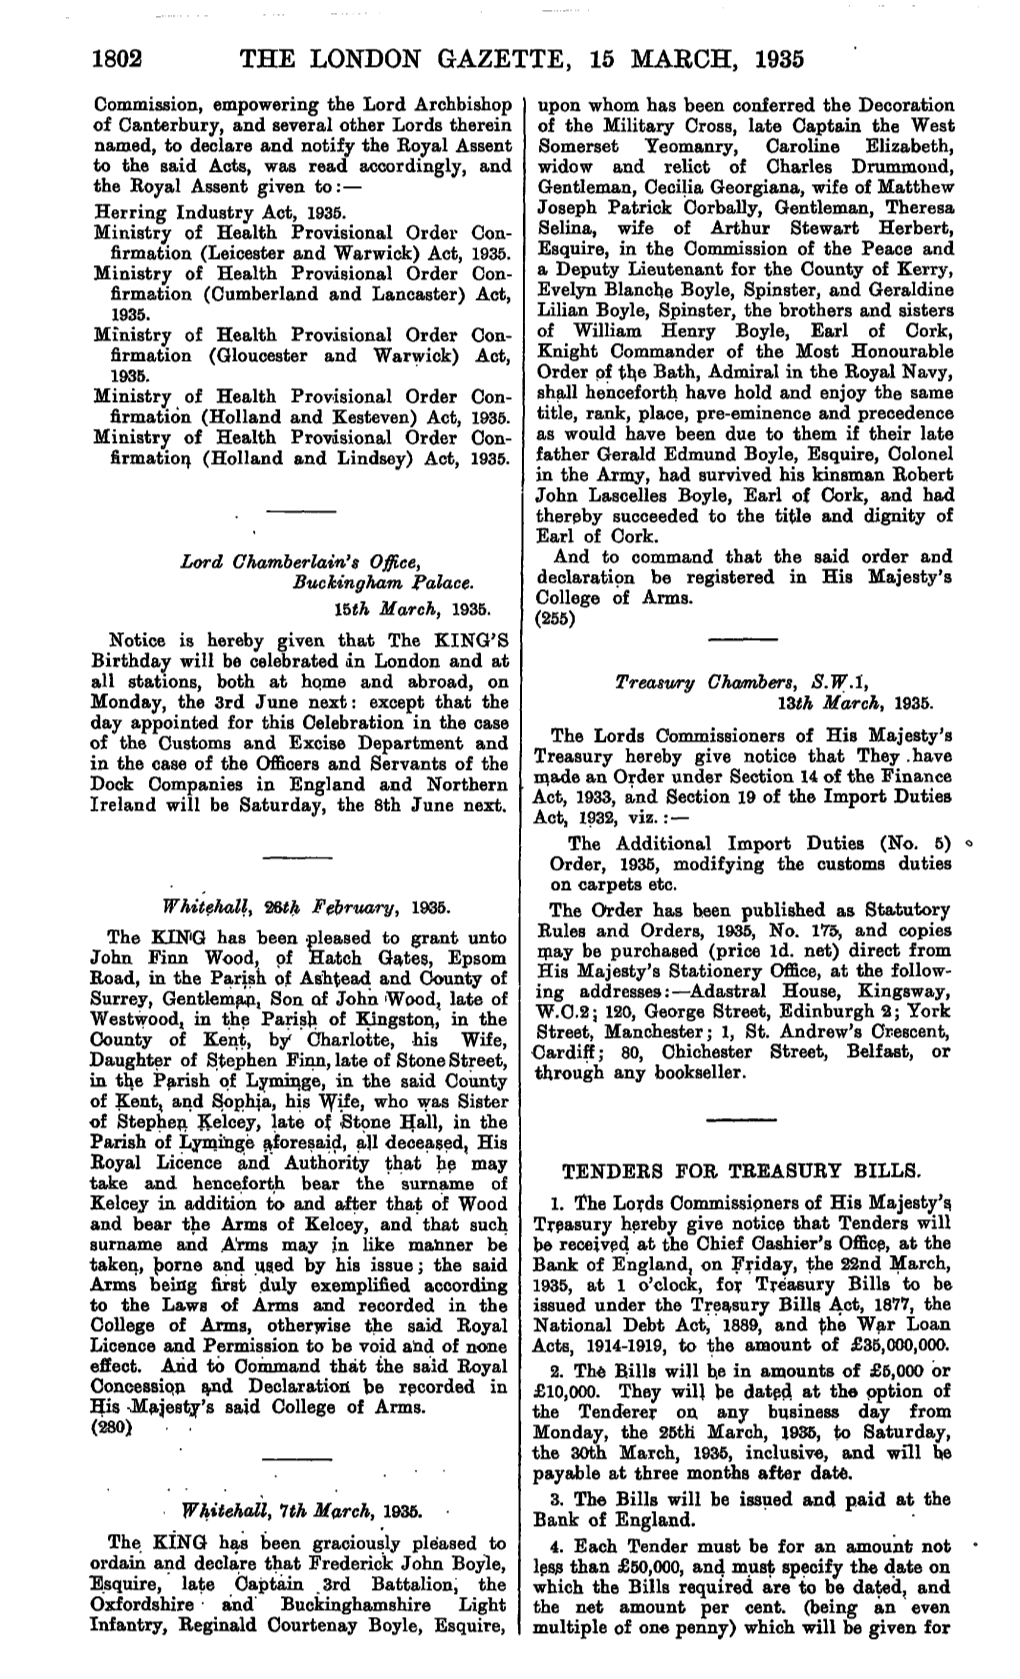 1802 the London Gazette, 15 March, 1935